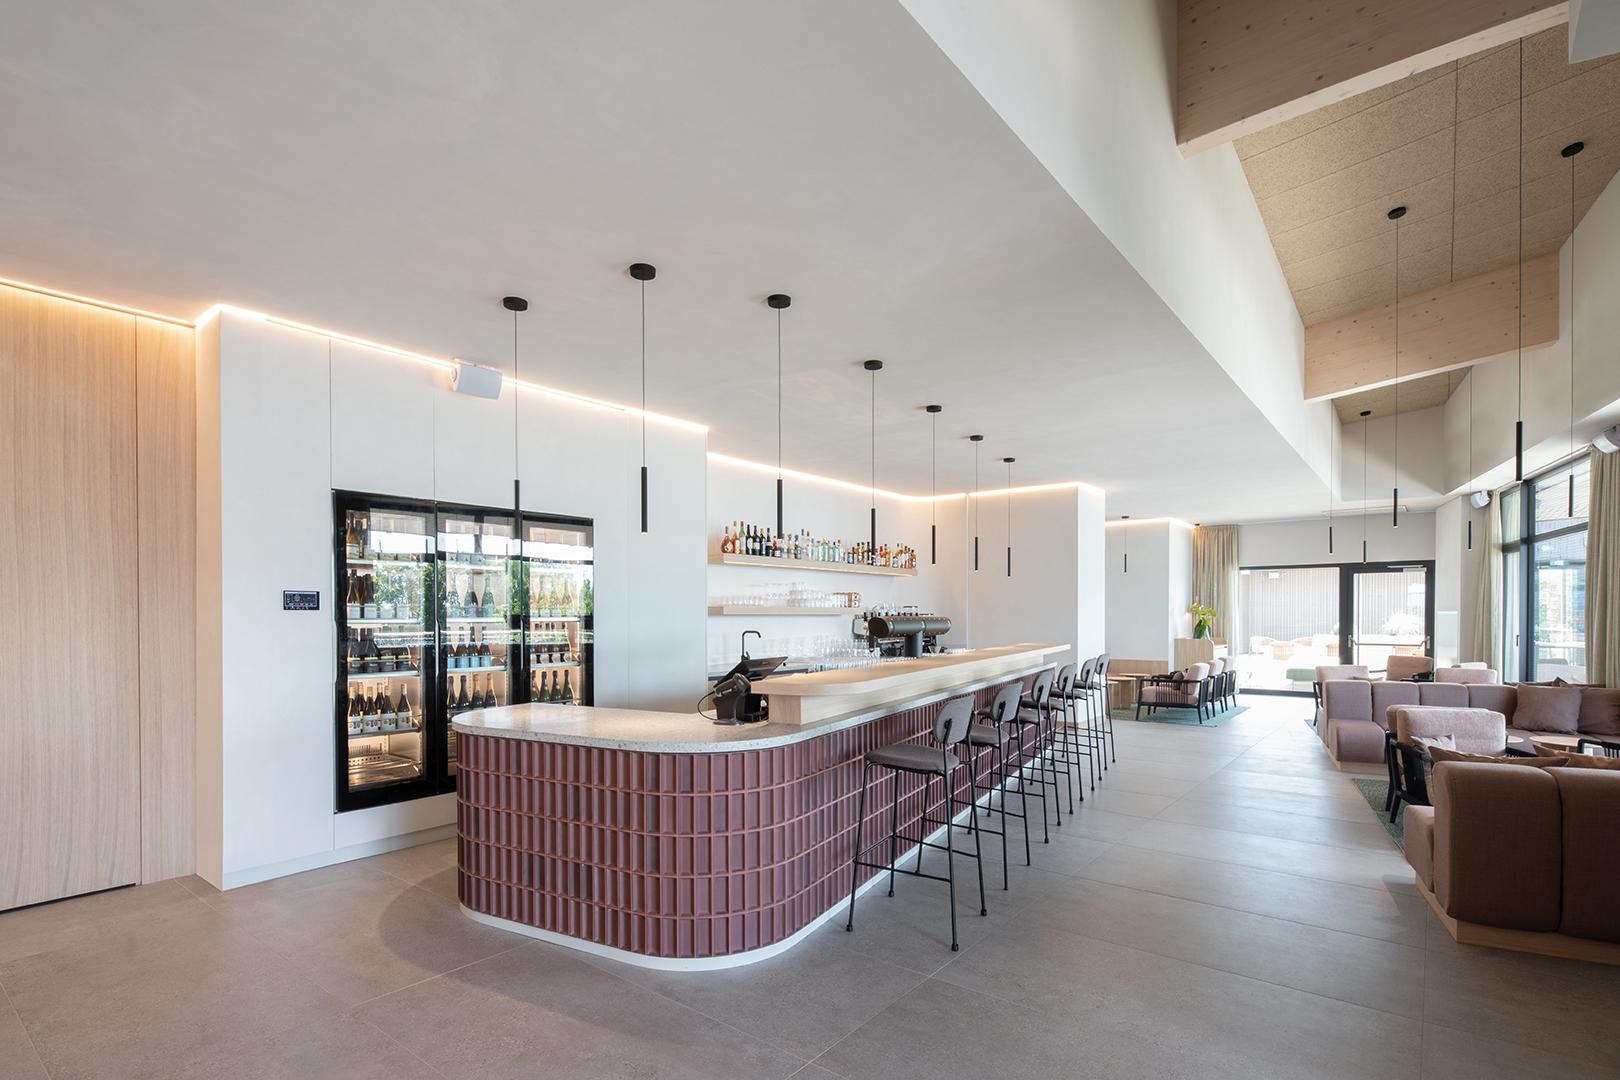 Neuer Strand Restaurant Libelle
#destilat #interiordesign #innenarchitektur #agentur #wien #linz #interior #interiordesigntrends 